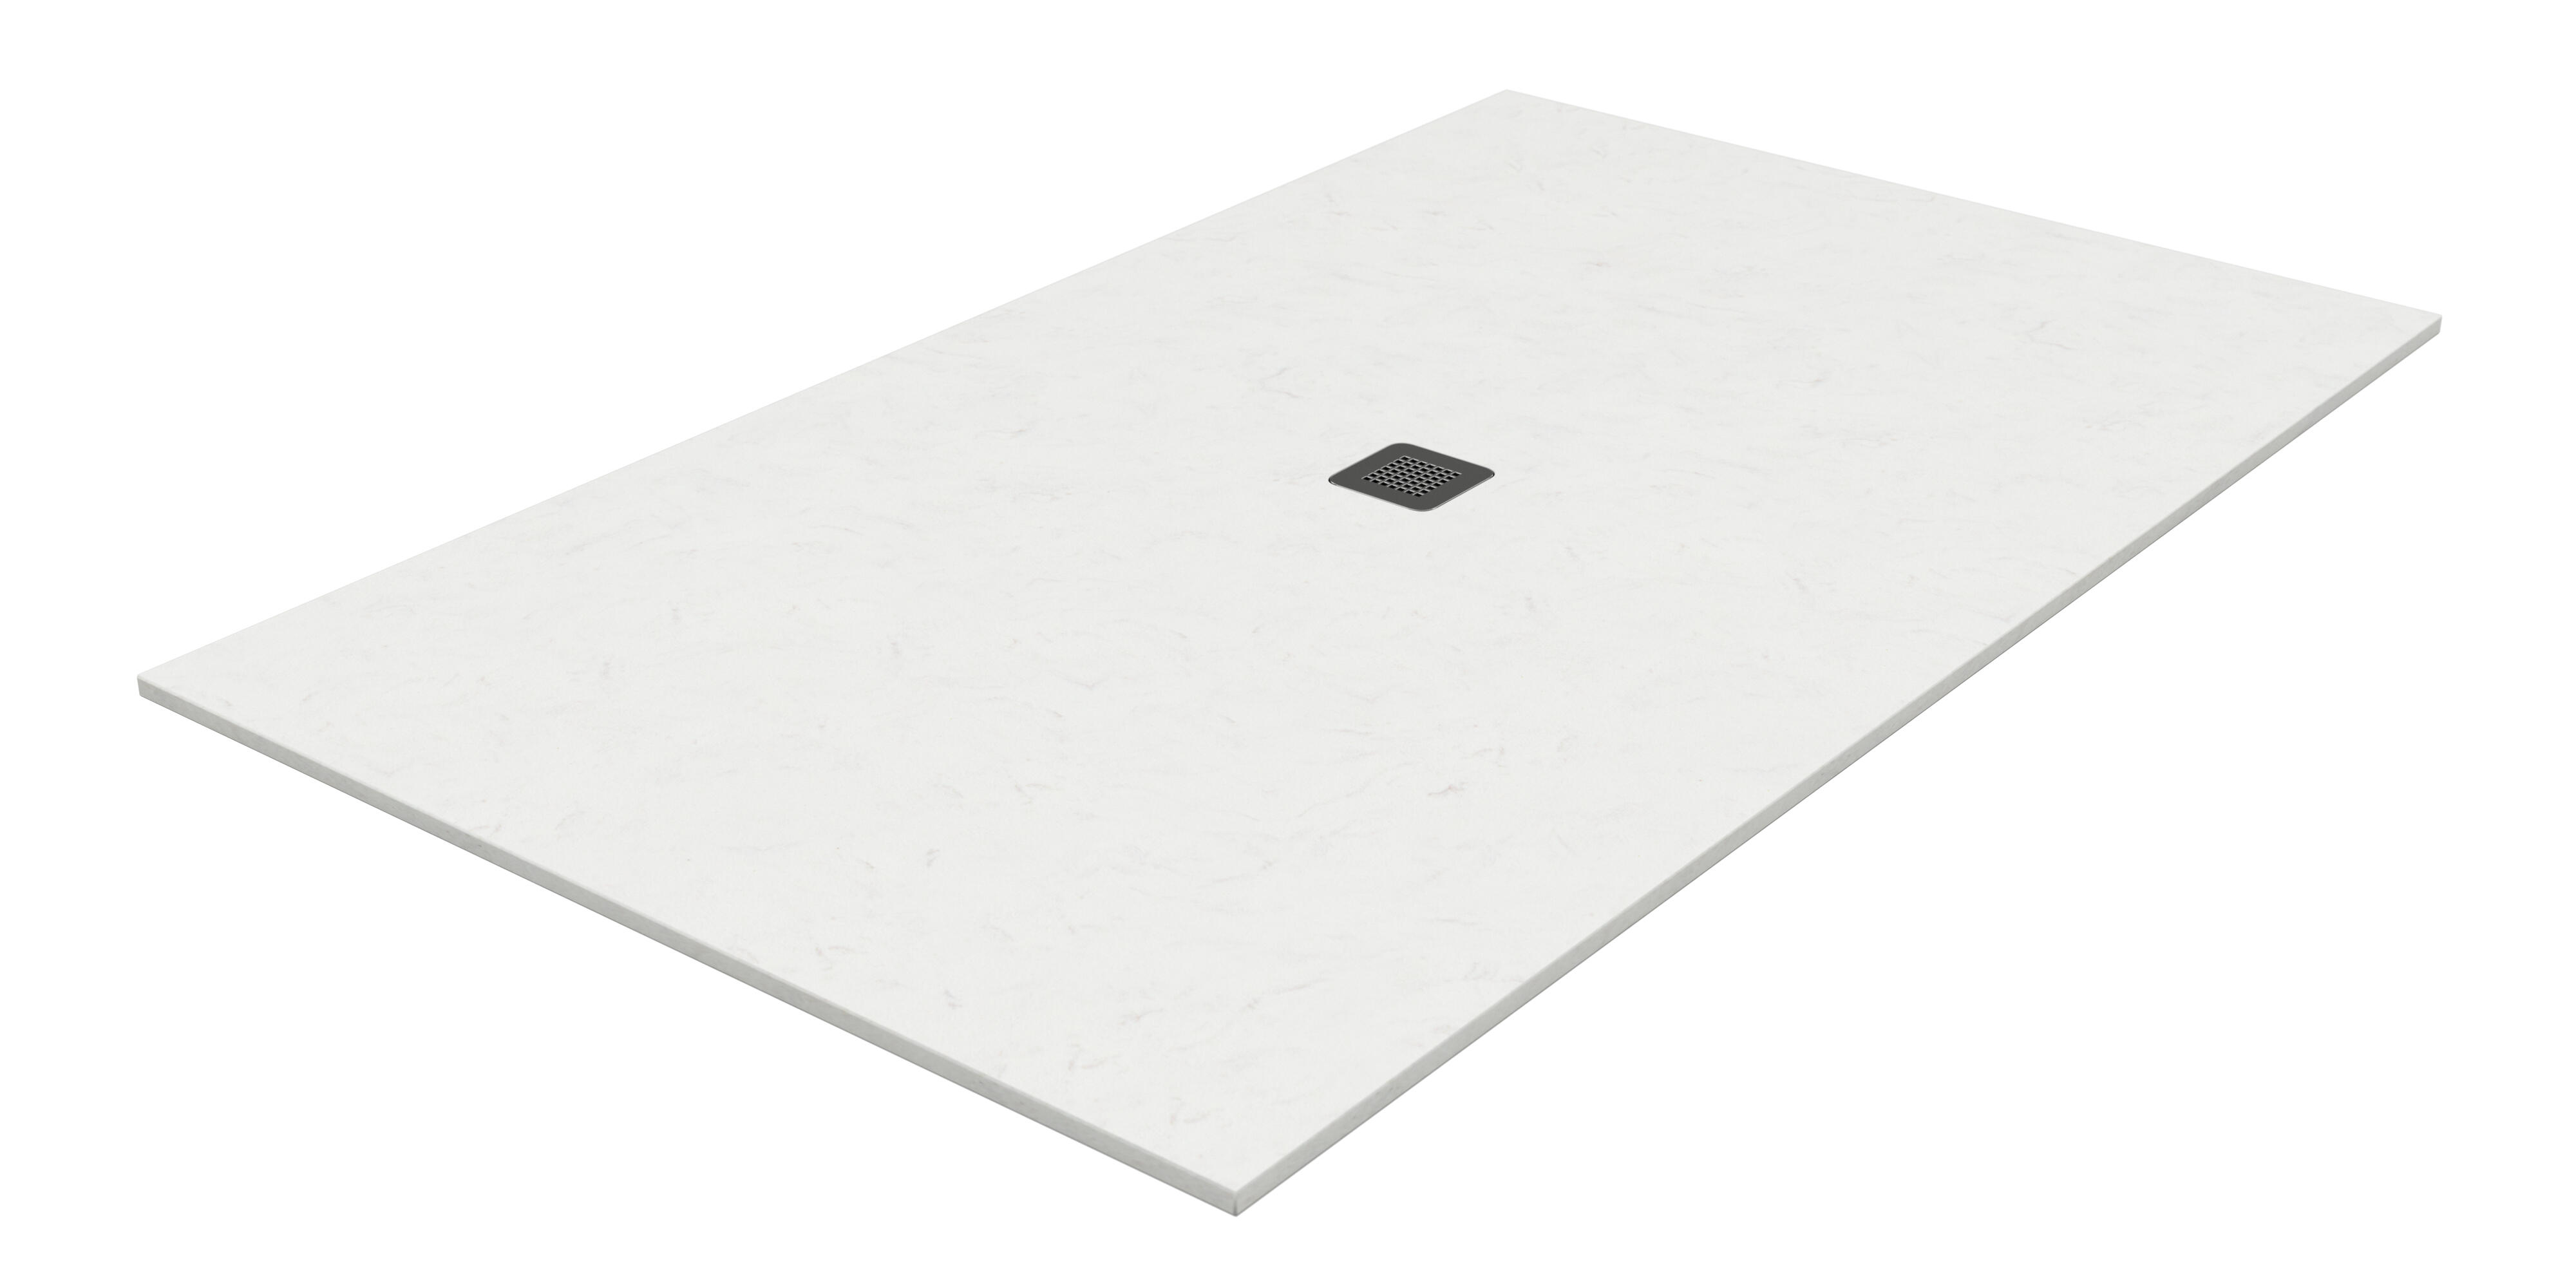 Plato de ducha kioto 180x90 cm blanco